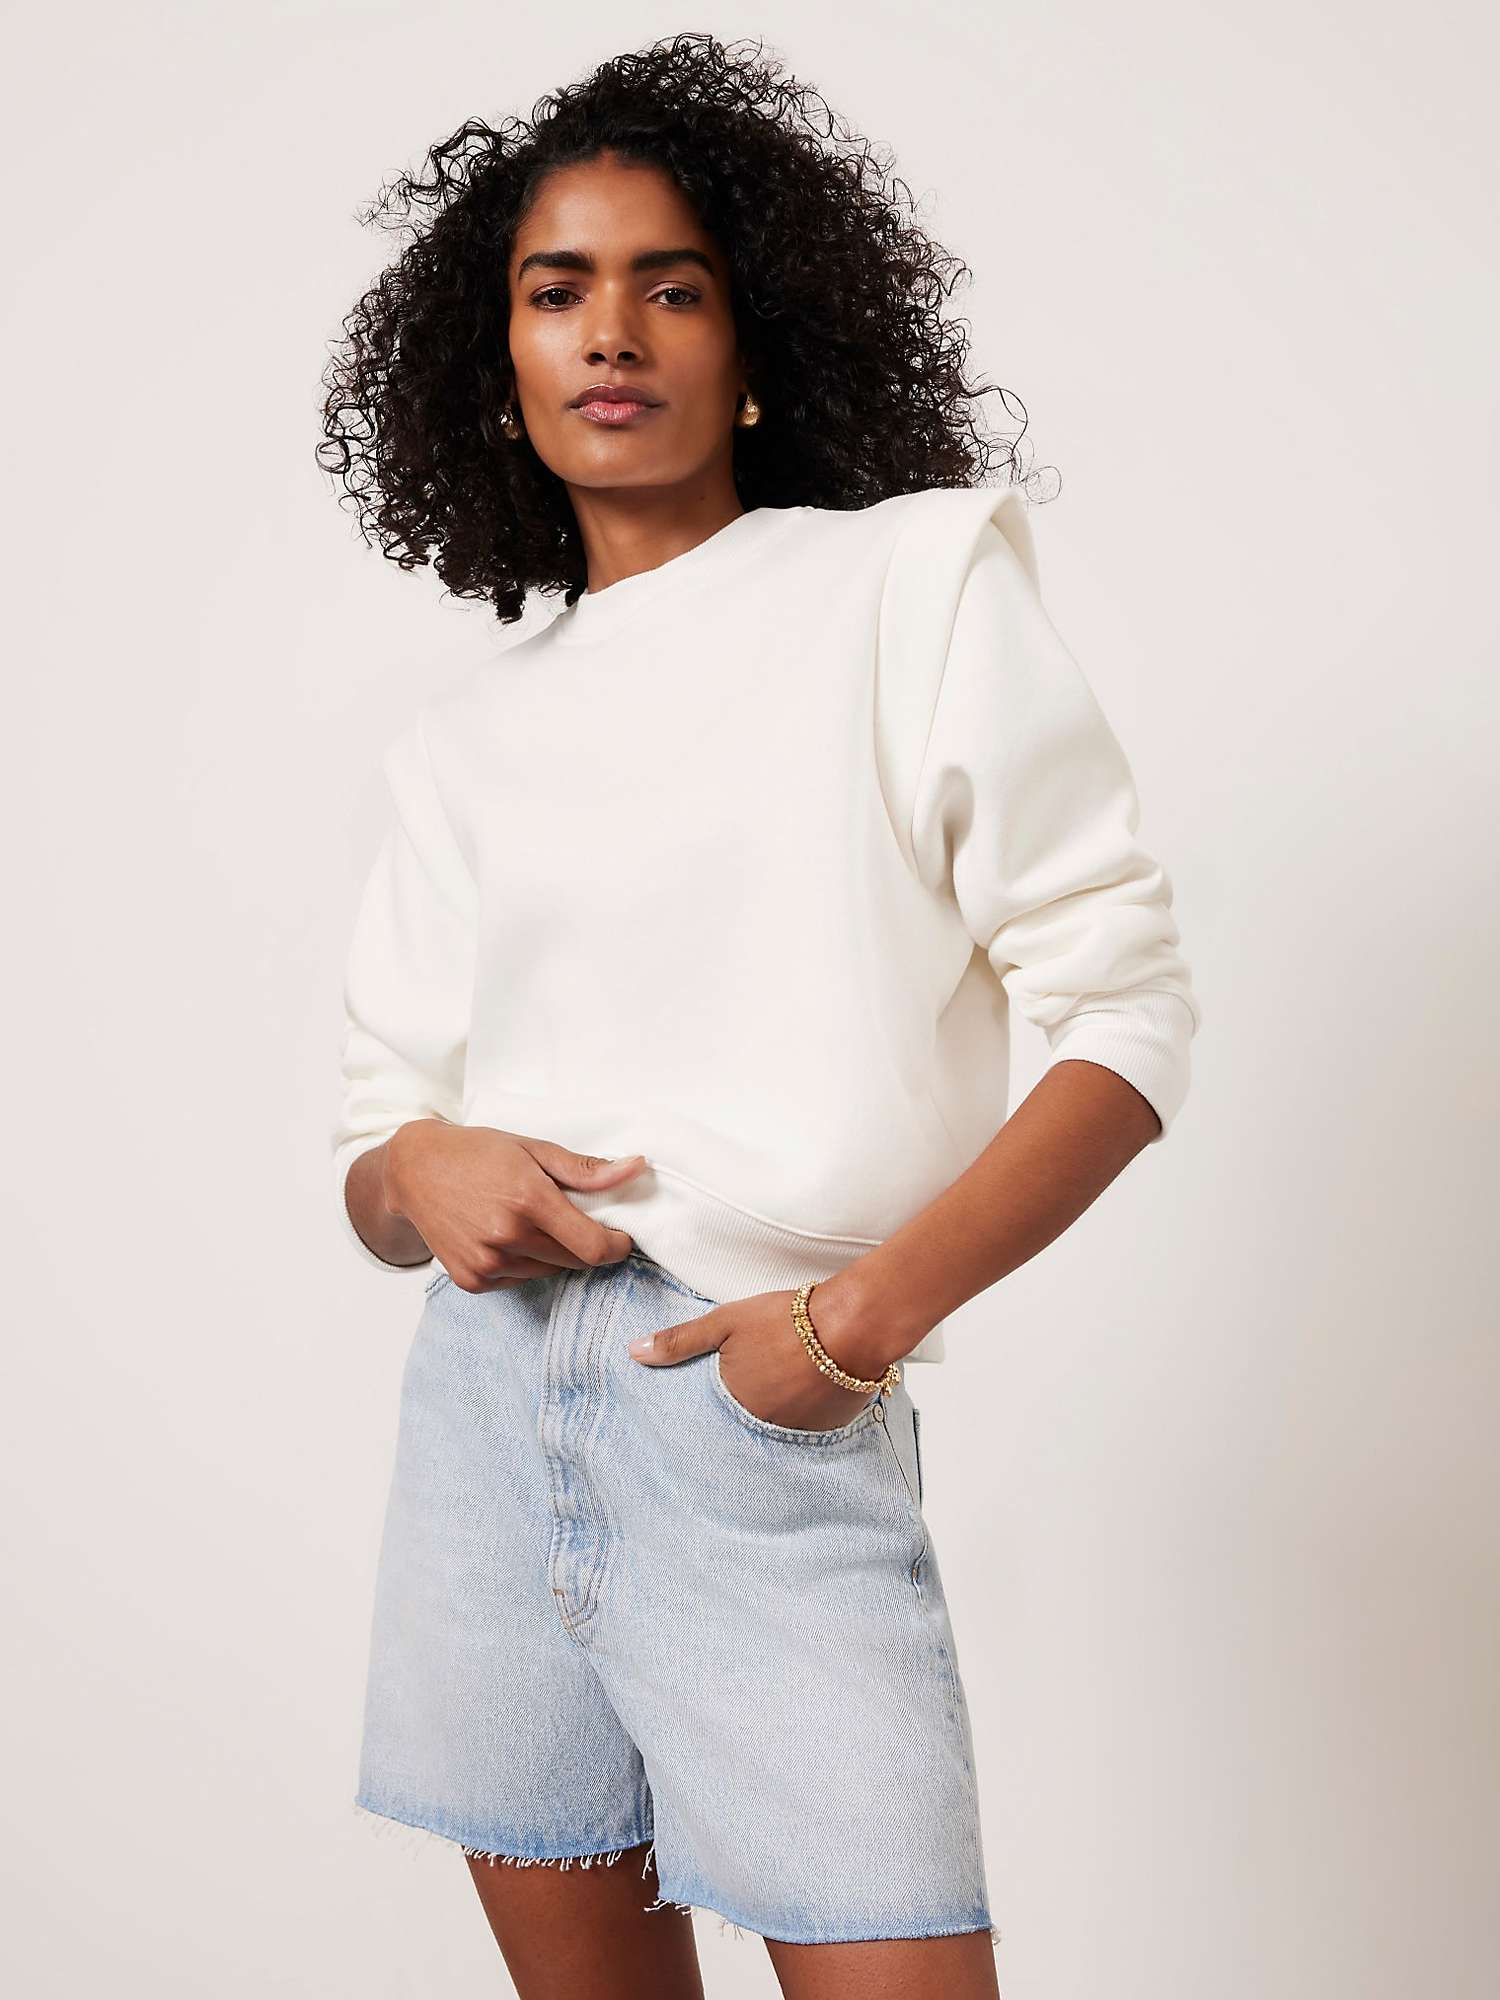 Buy Mint Velvet Extended Shoulder Sweatshirt, White Online at johnlewis.com